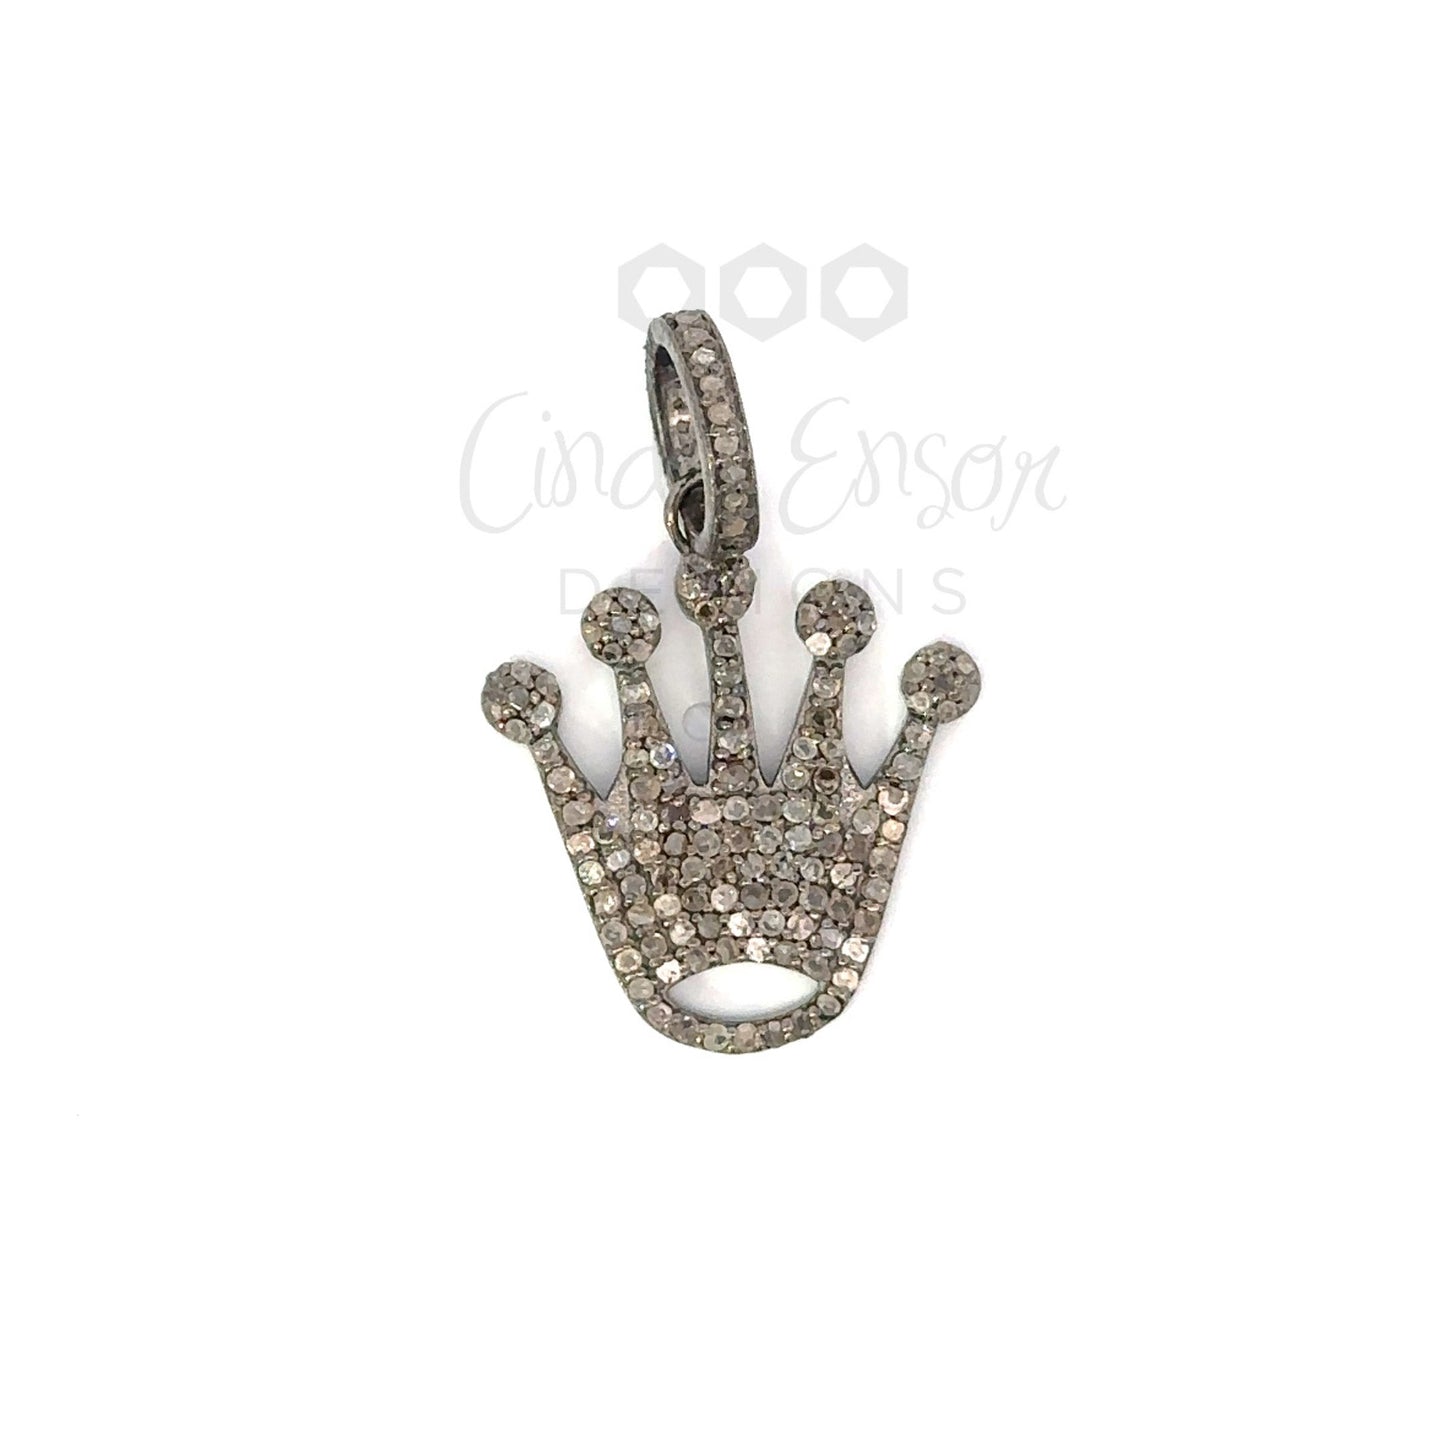 Pave Diamond Crown Pendant